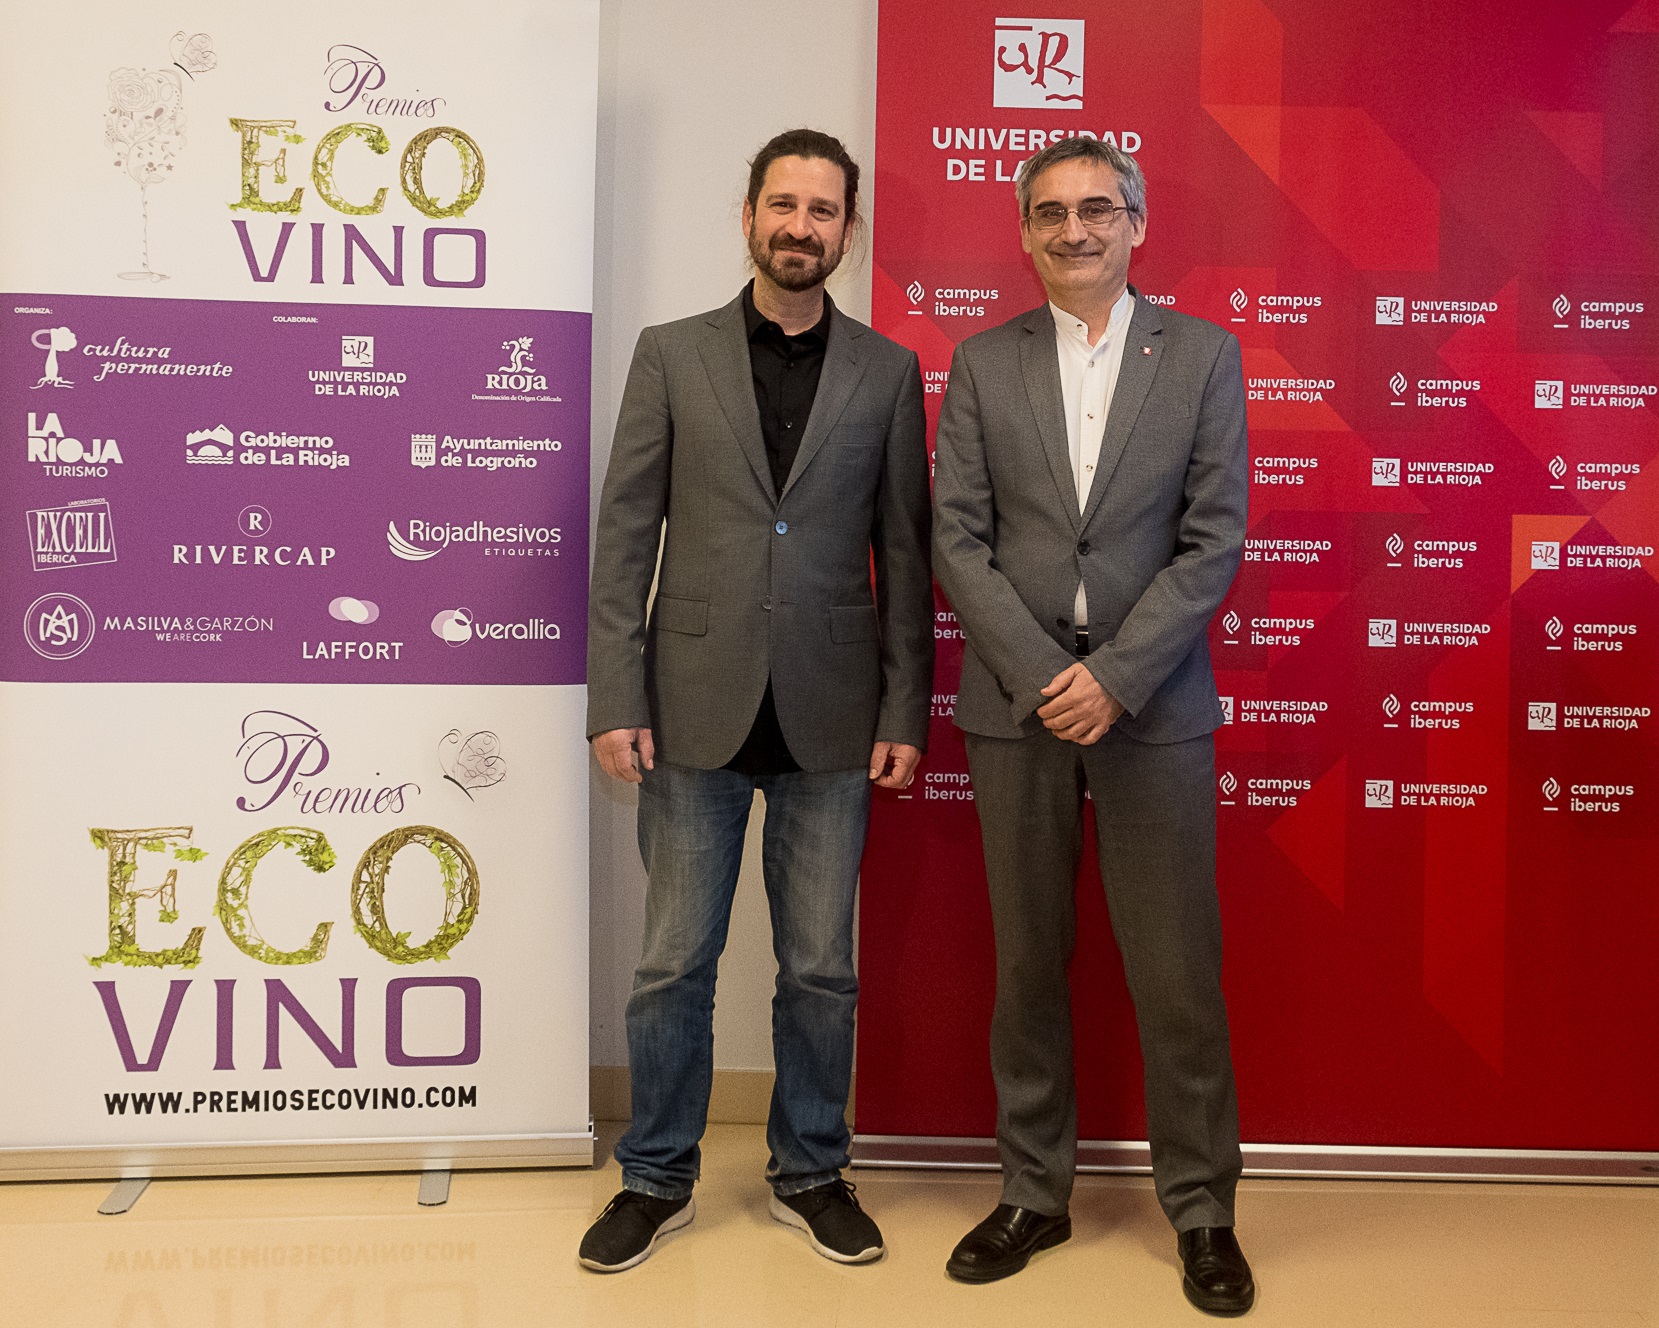 Iñigo Crespo (secretario general de Premios Ecovino) y Julio Rubio (rector de la Universidad de La Rioja)